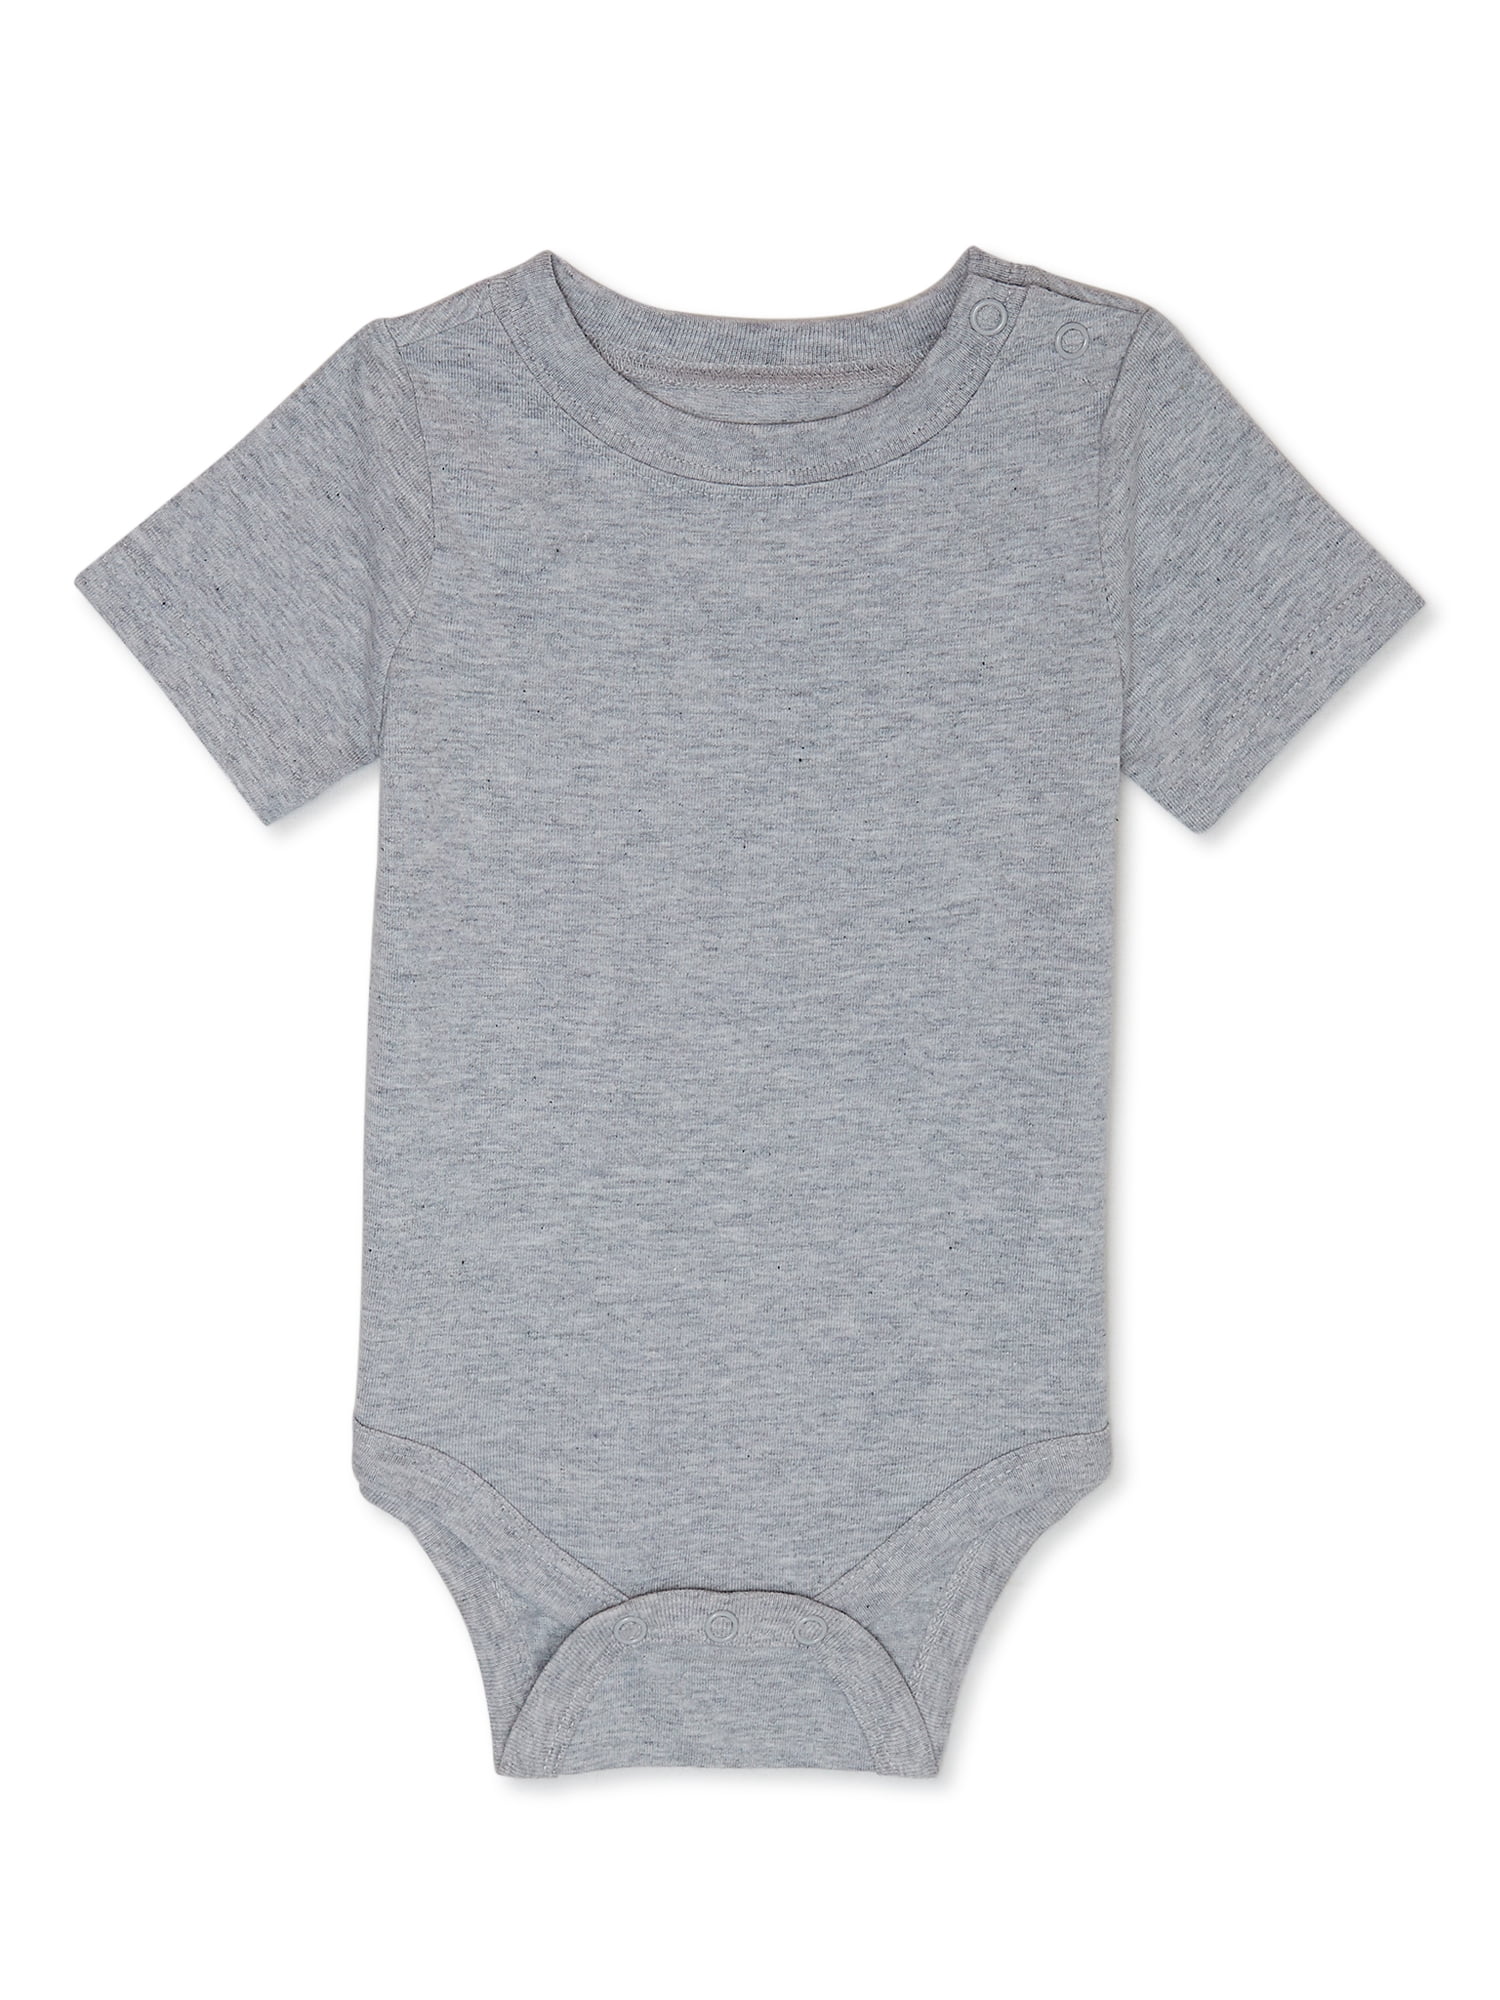 Garanimals Baby Boy Short Sleeve Solid Bodysuit, Sizes 0-24 Months